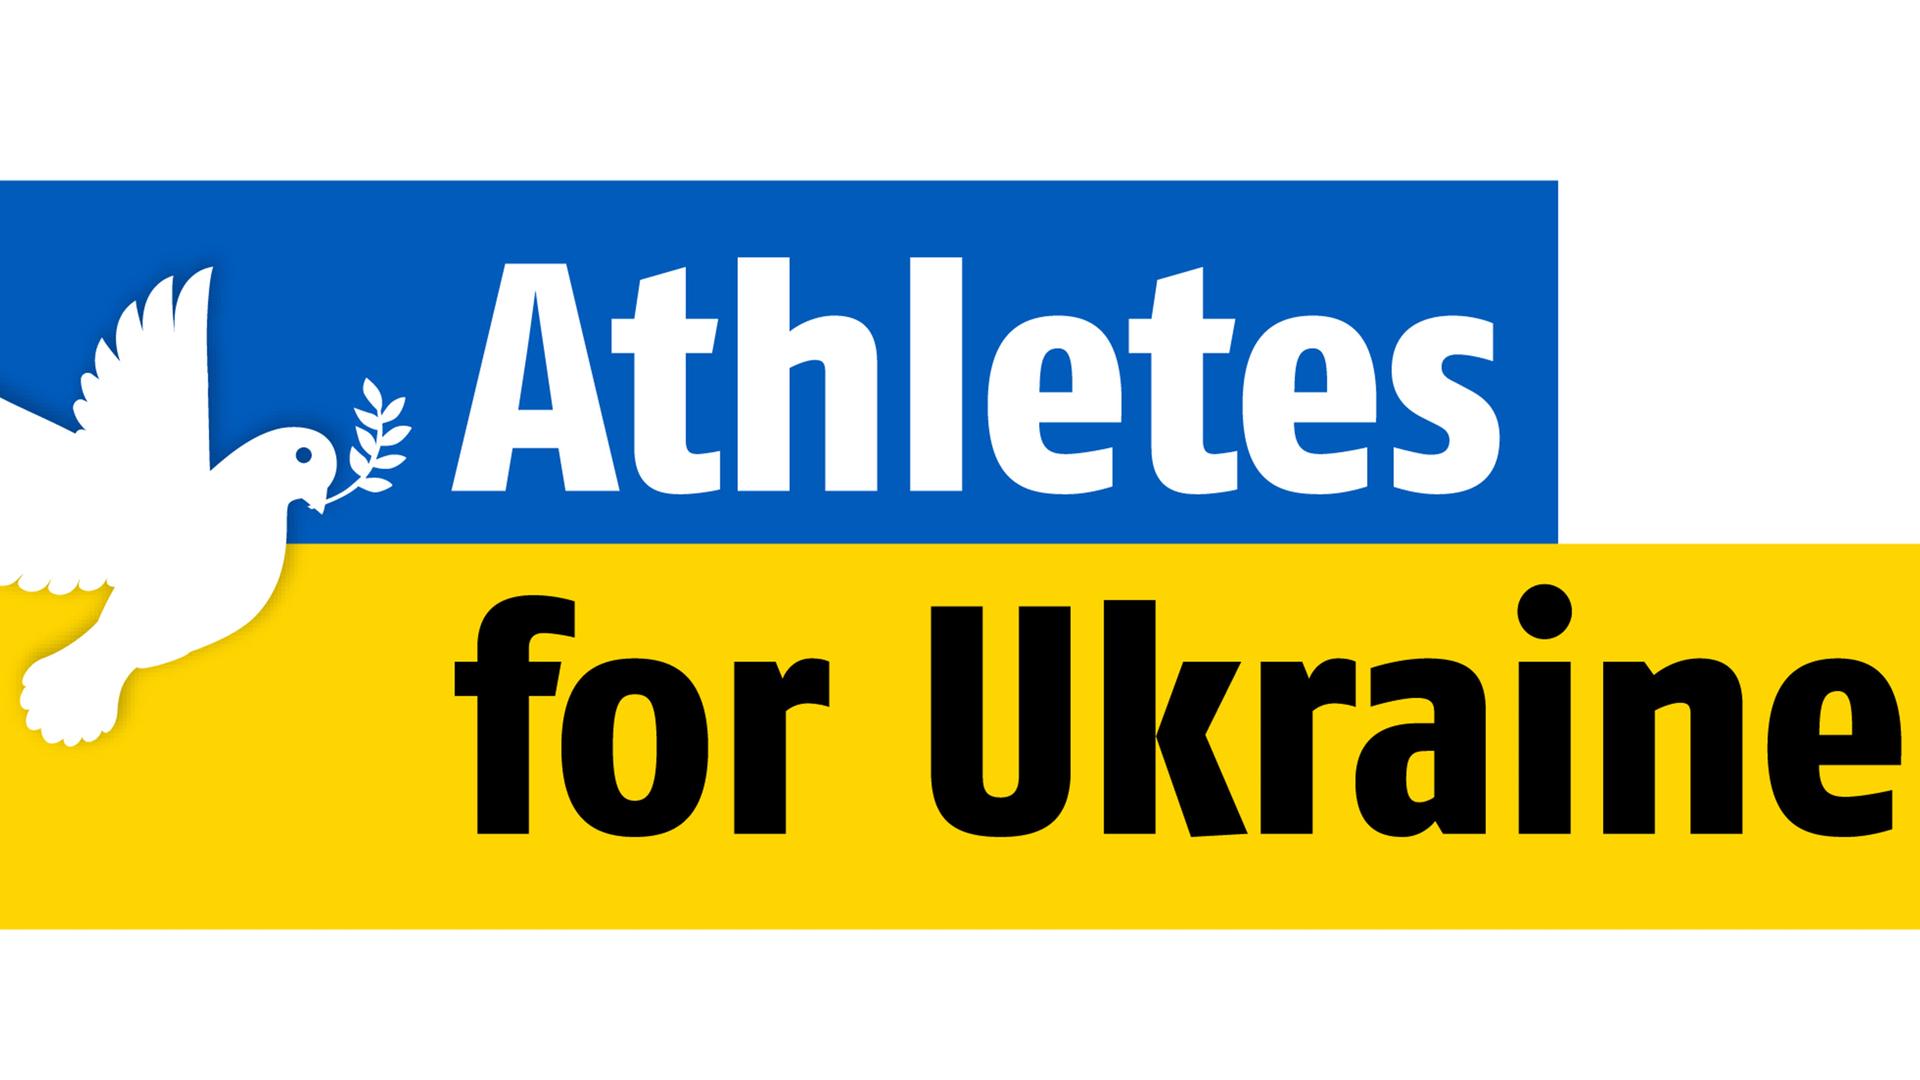 Das Logo des Vereins "Athletes for Ukraine"